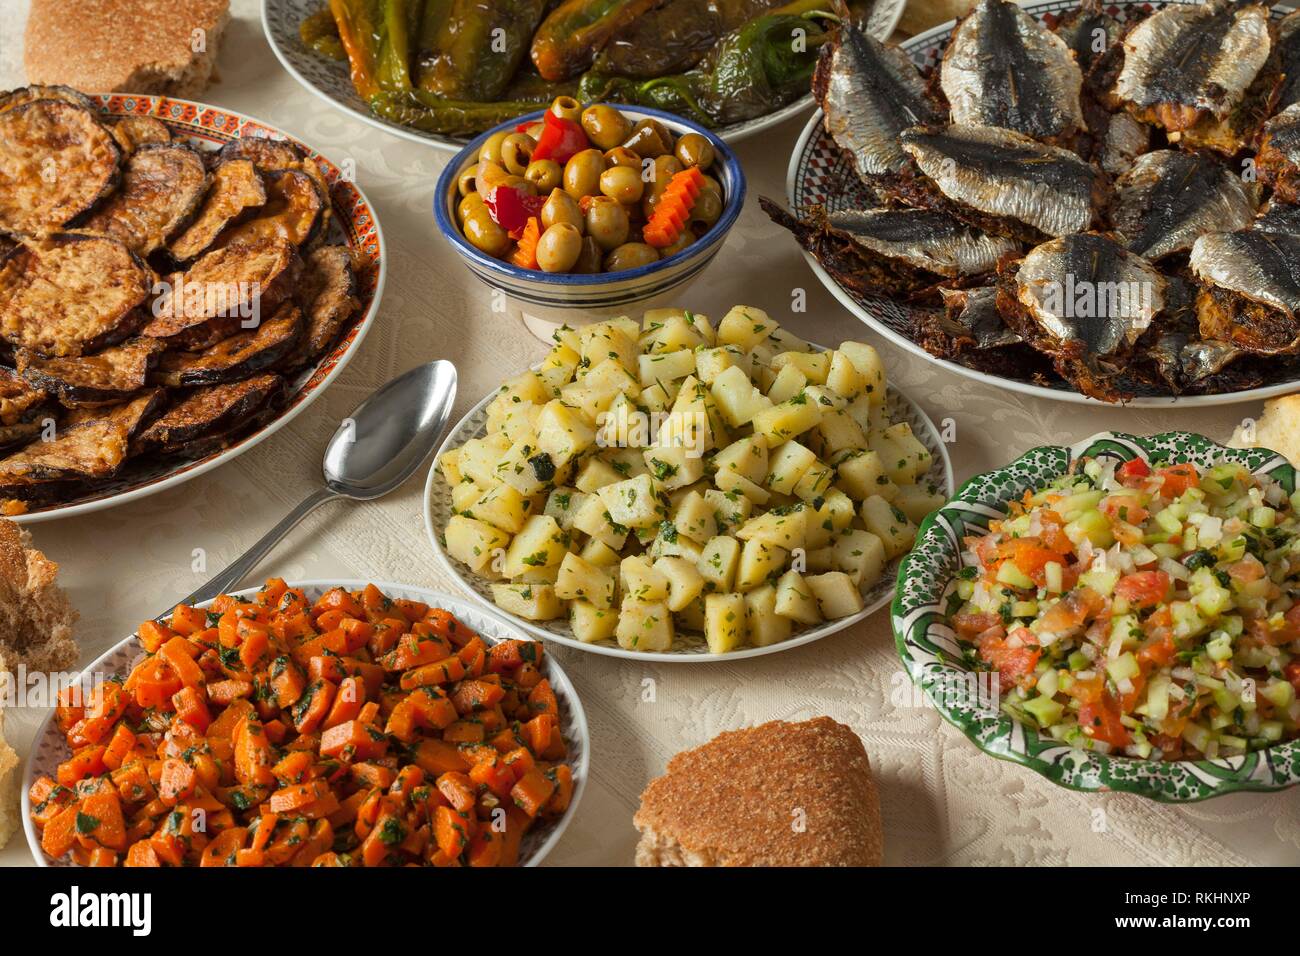 Repas marocain avec une variété de plats cuisinés avec des produits frais, des sardines légumes et le pain. Banque D'Images